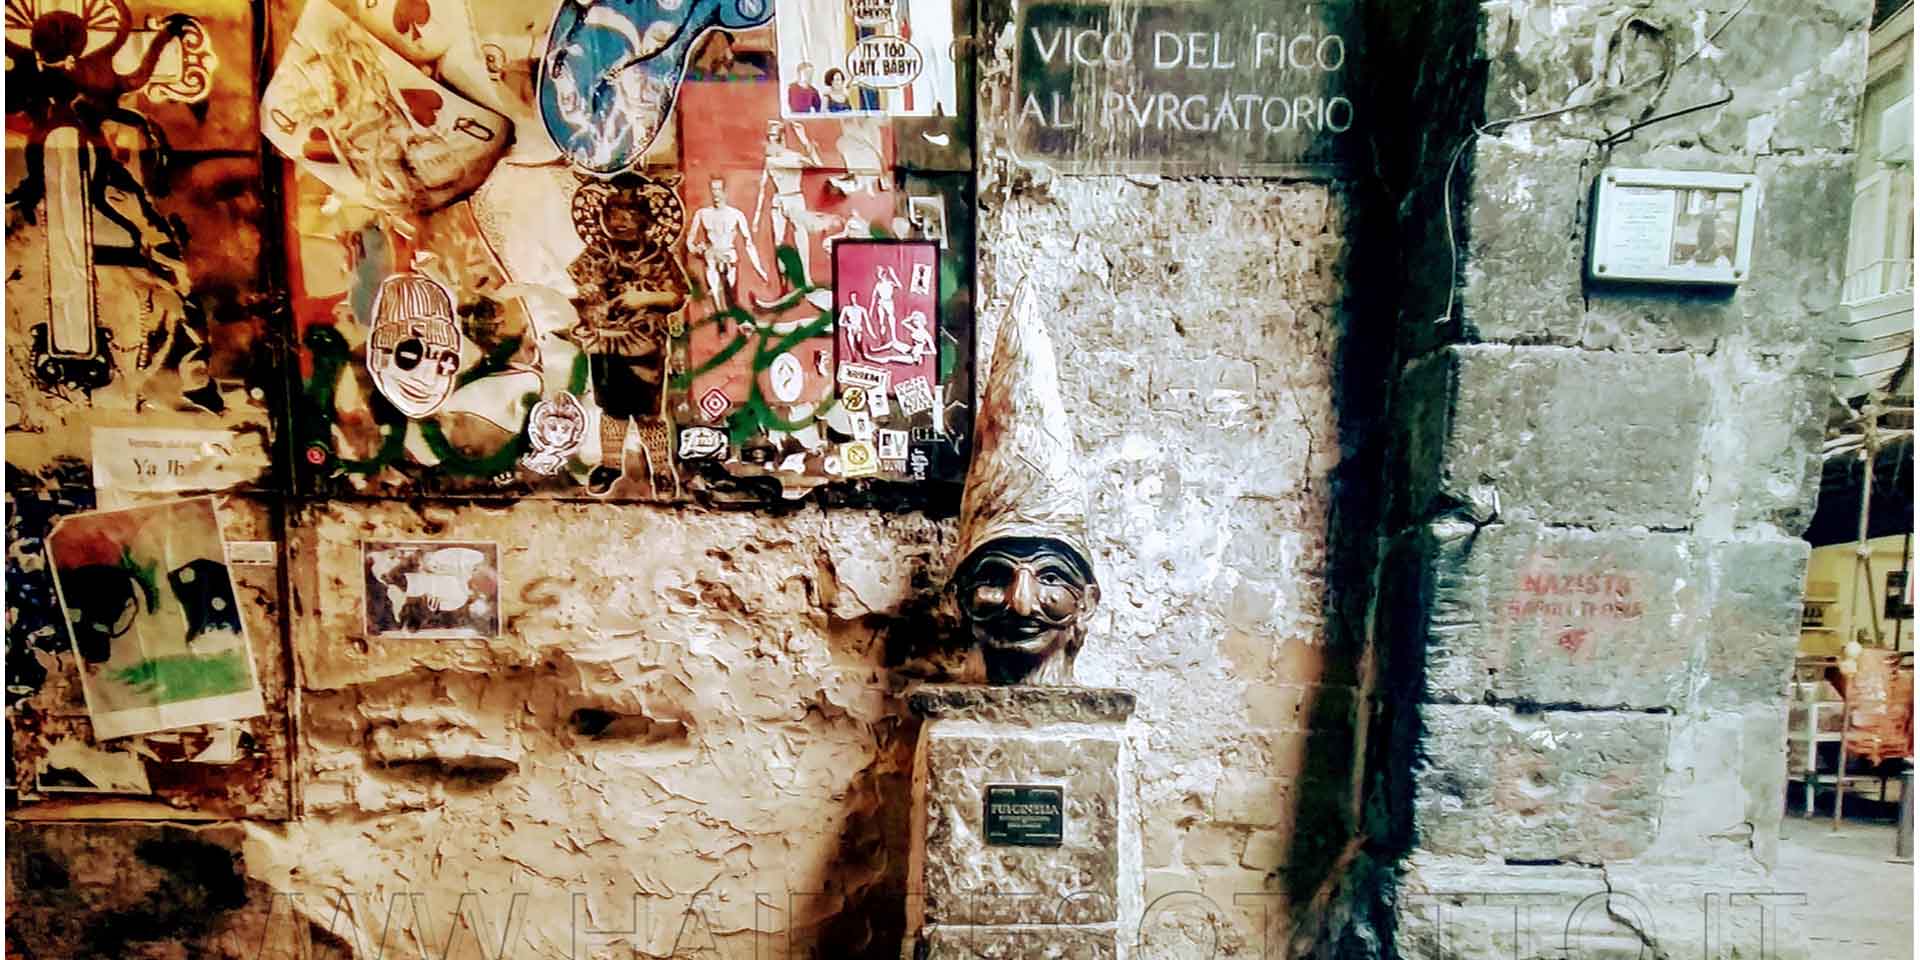 Napoli statua di Pulcinella in Vico del Figo al Purgatorio